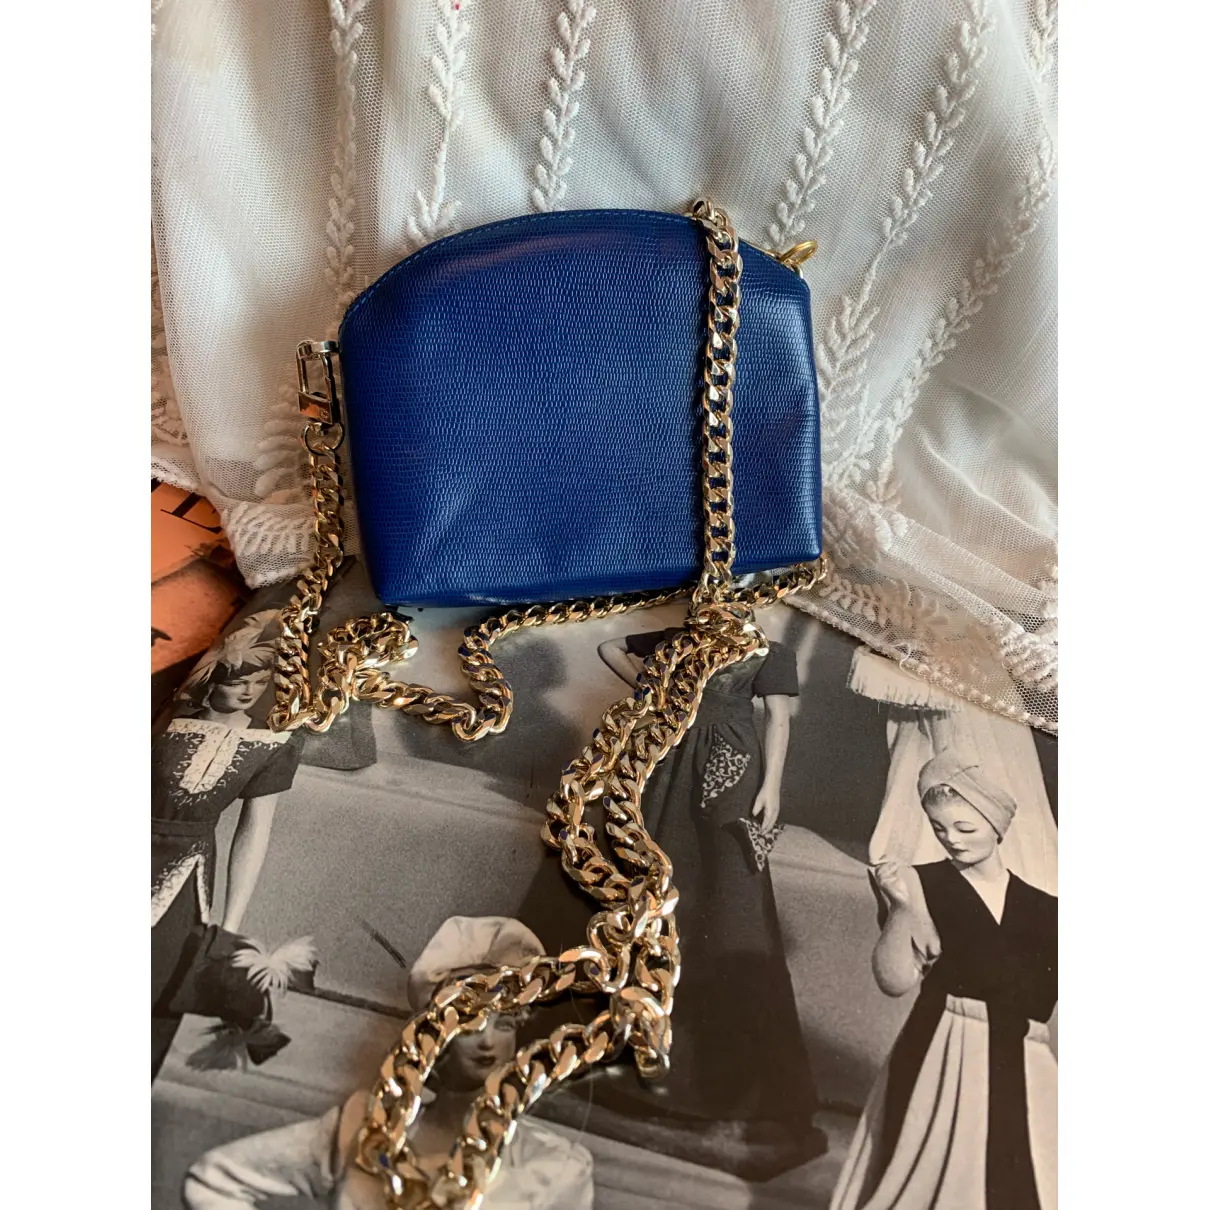 Buy Celine Leather crossbody bag online - Vintage